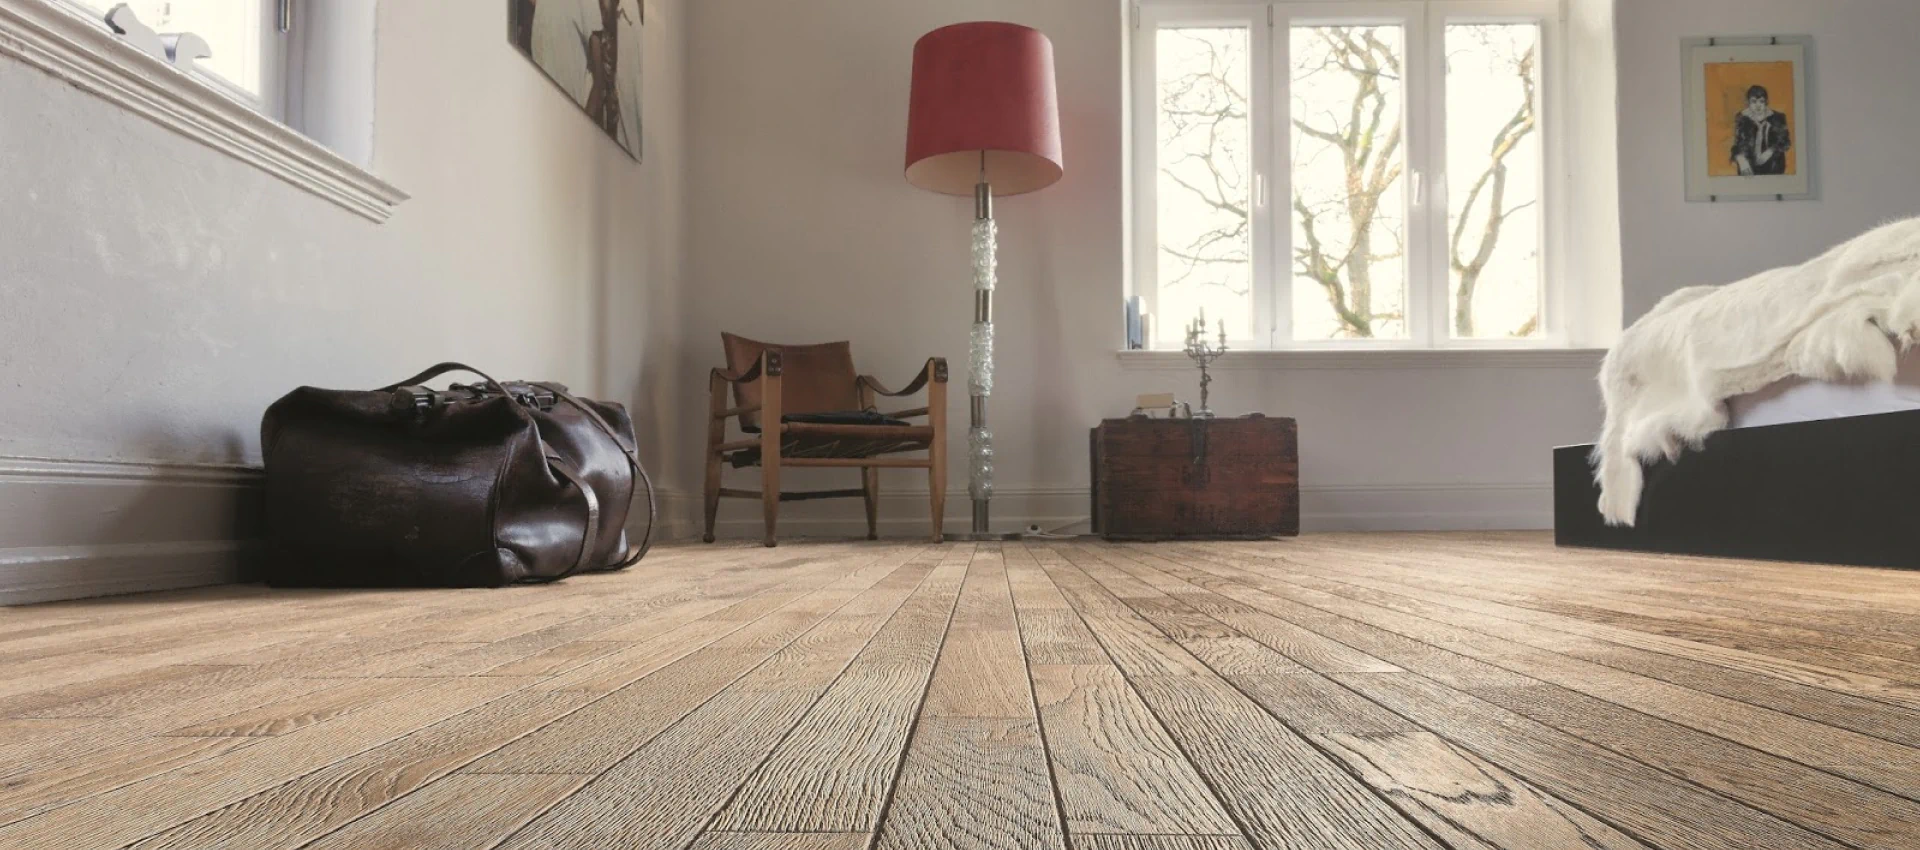 hardwood flooring in a room